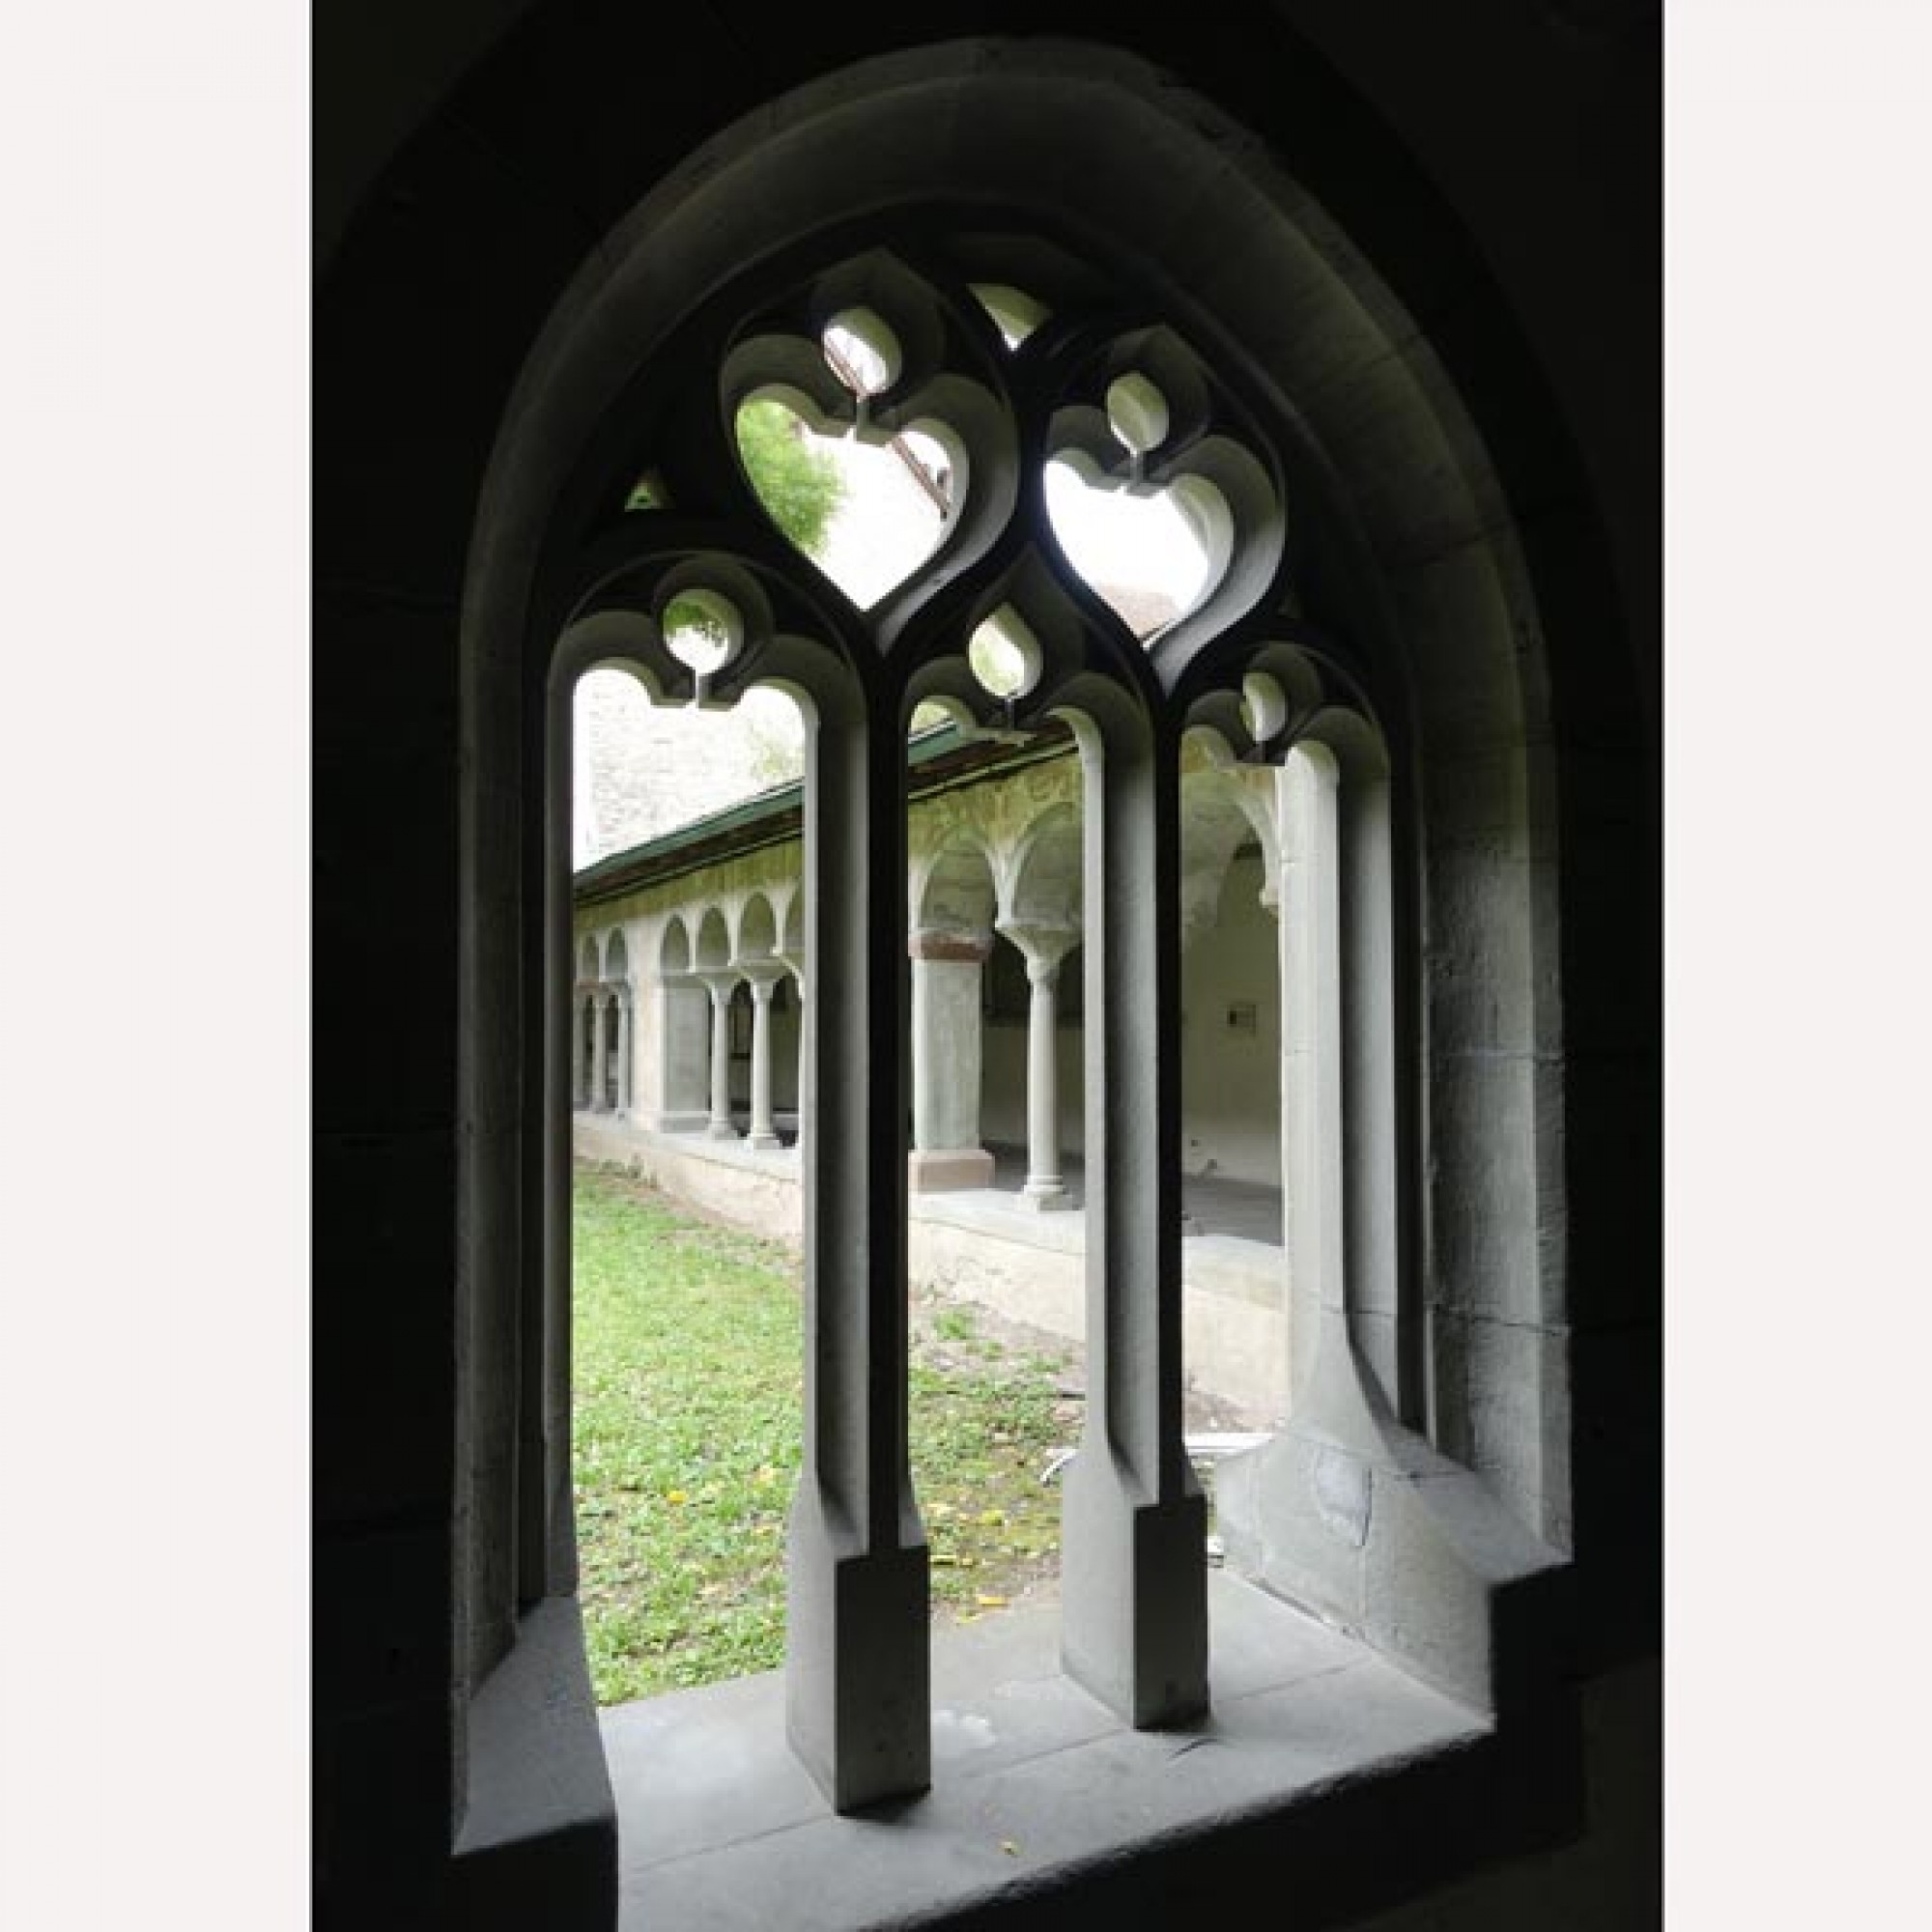 Die Details der Fensterbögen des südlichen Gangs im gotischen Stil.